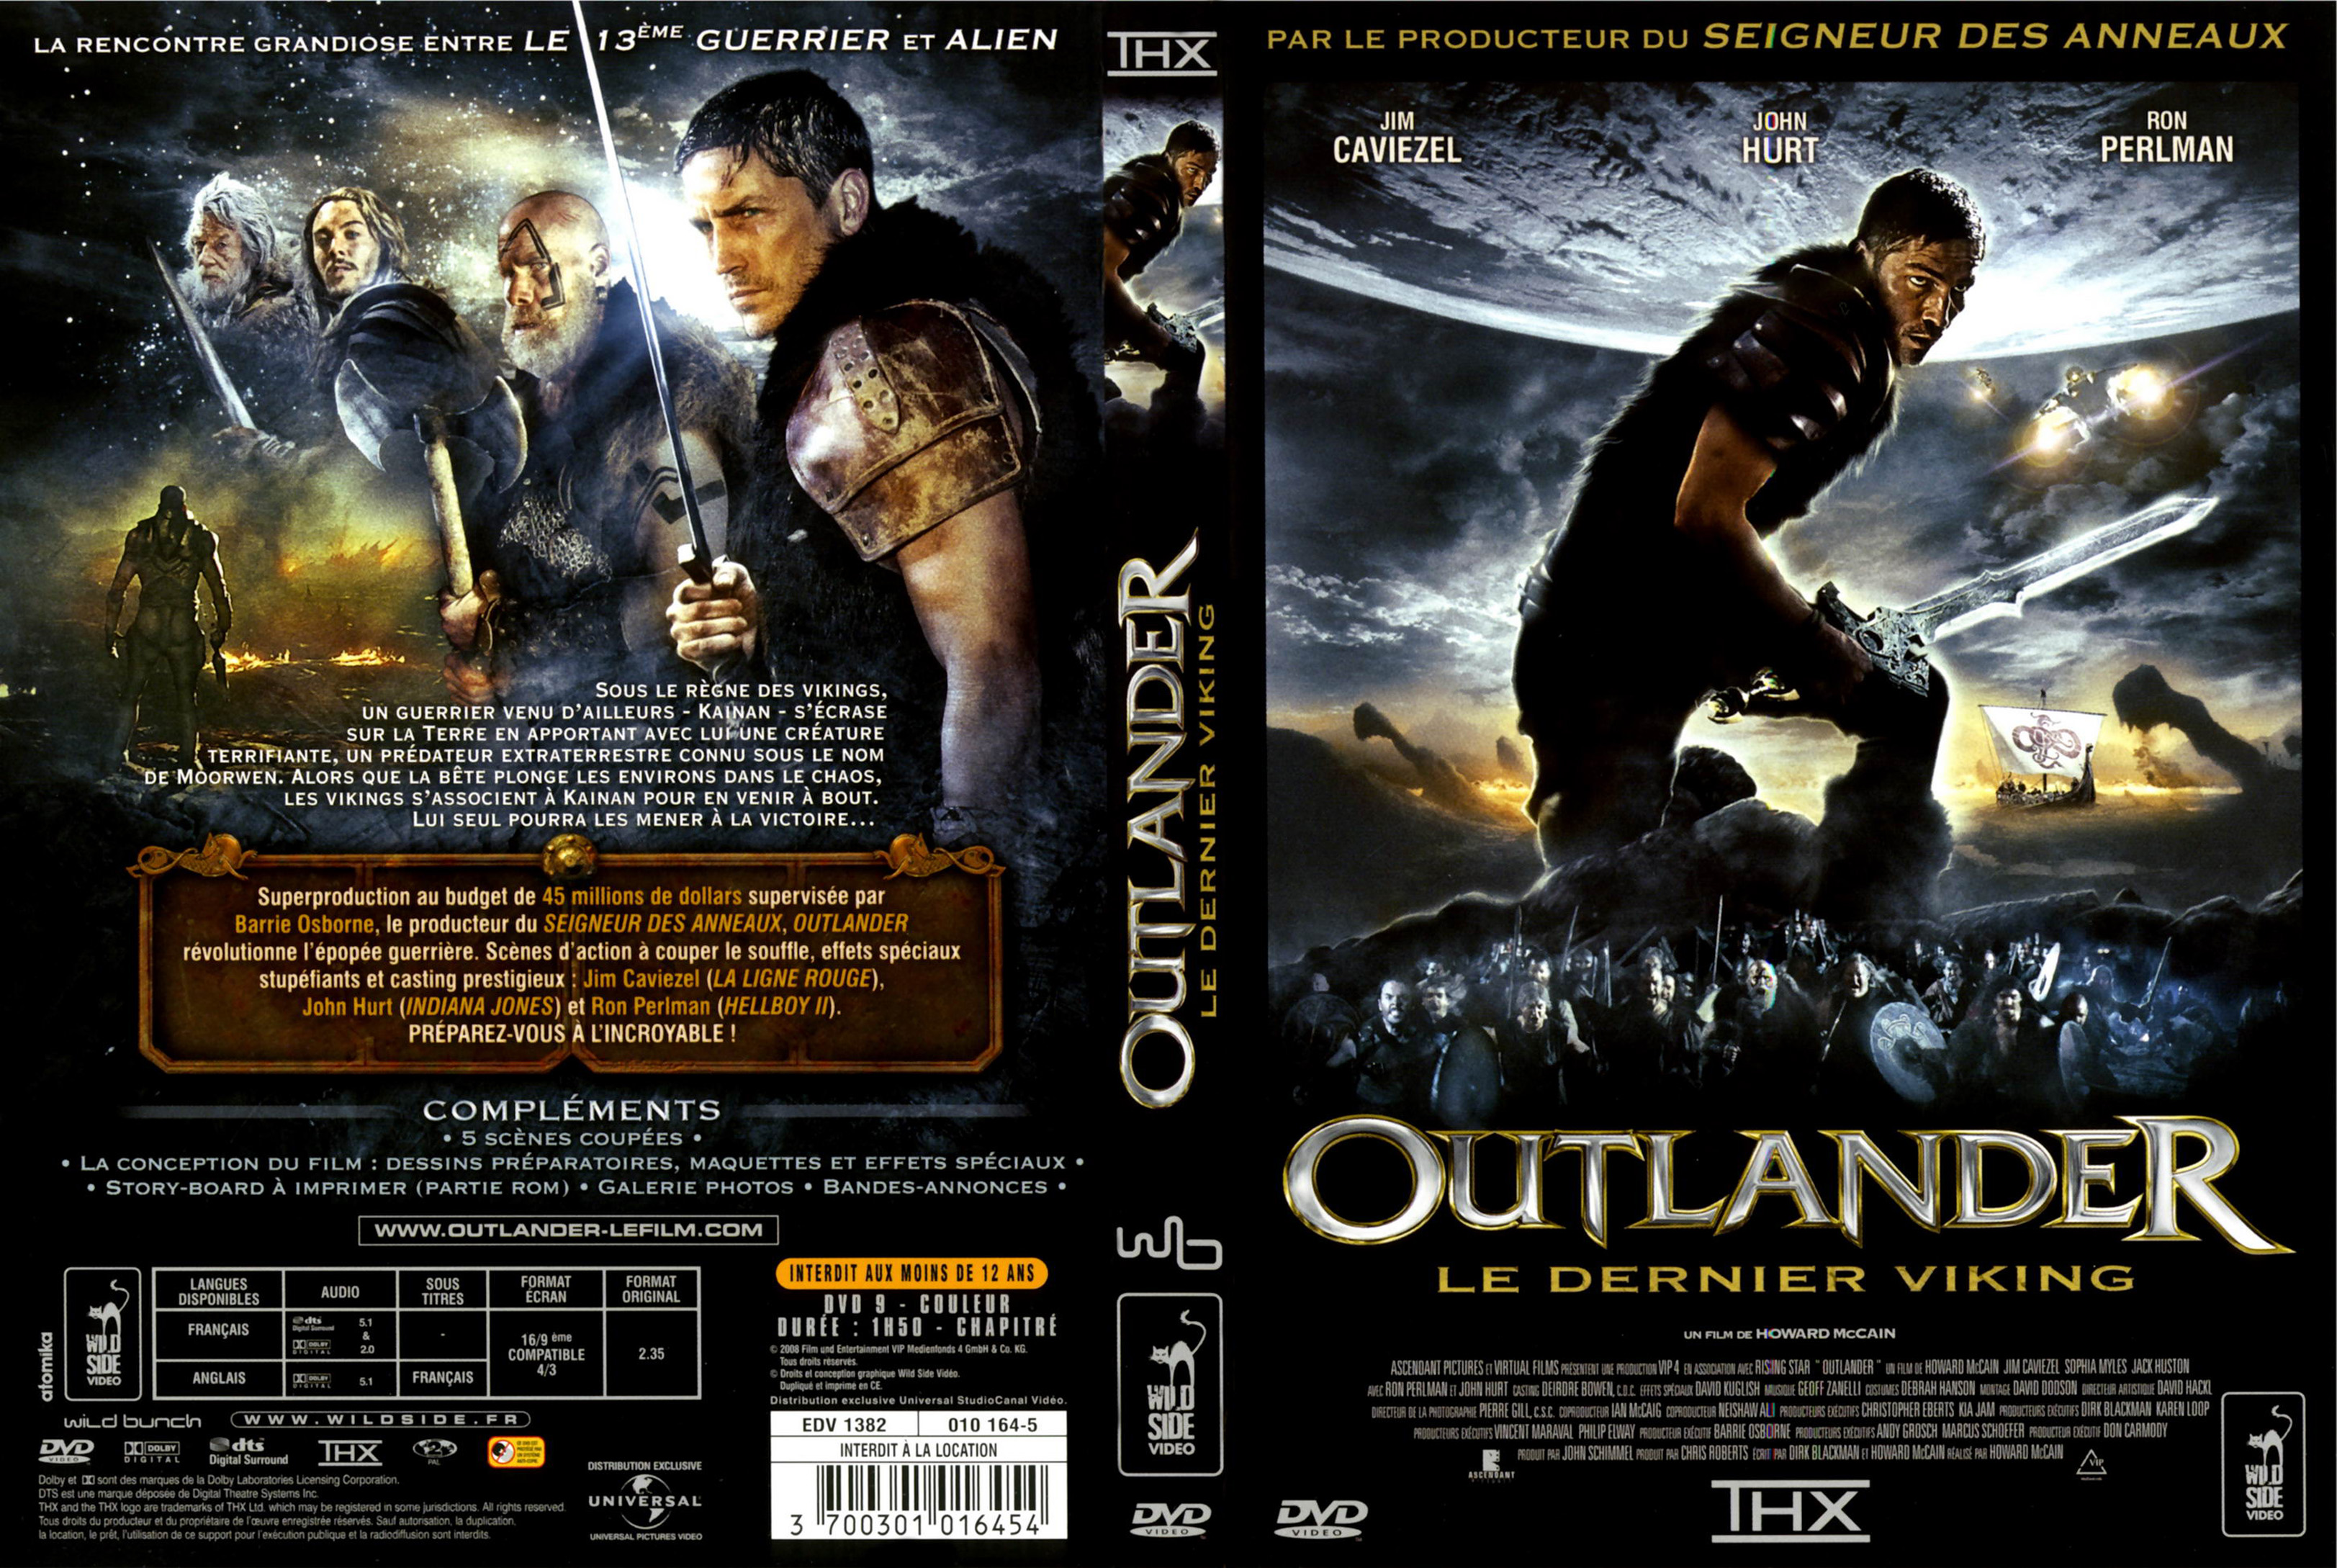 Jaquette DVD Outlander le dernier viking